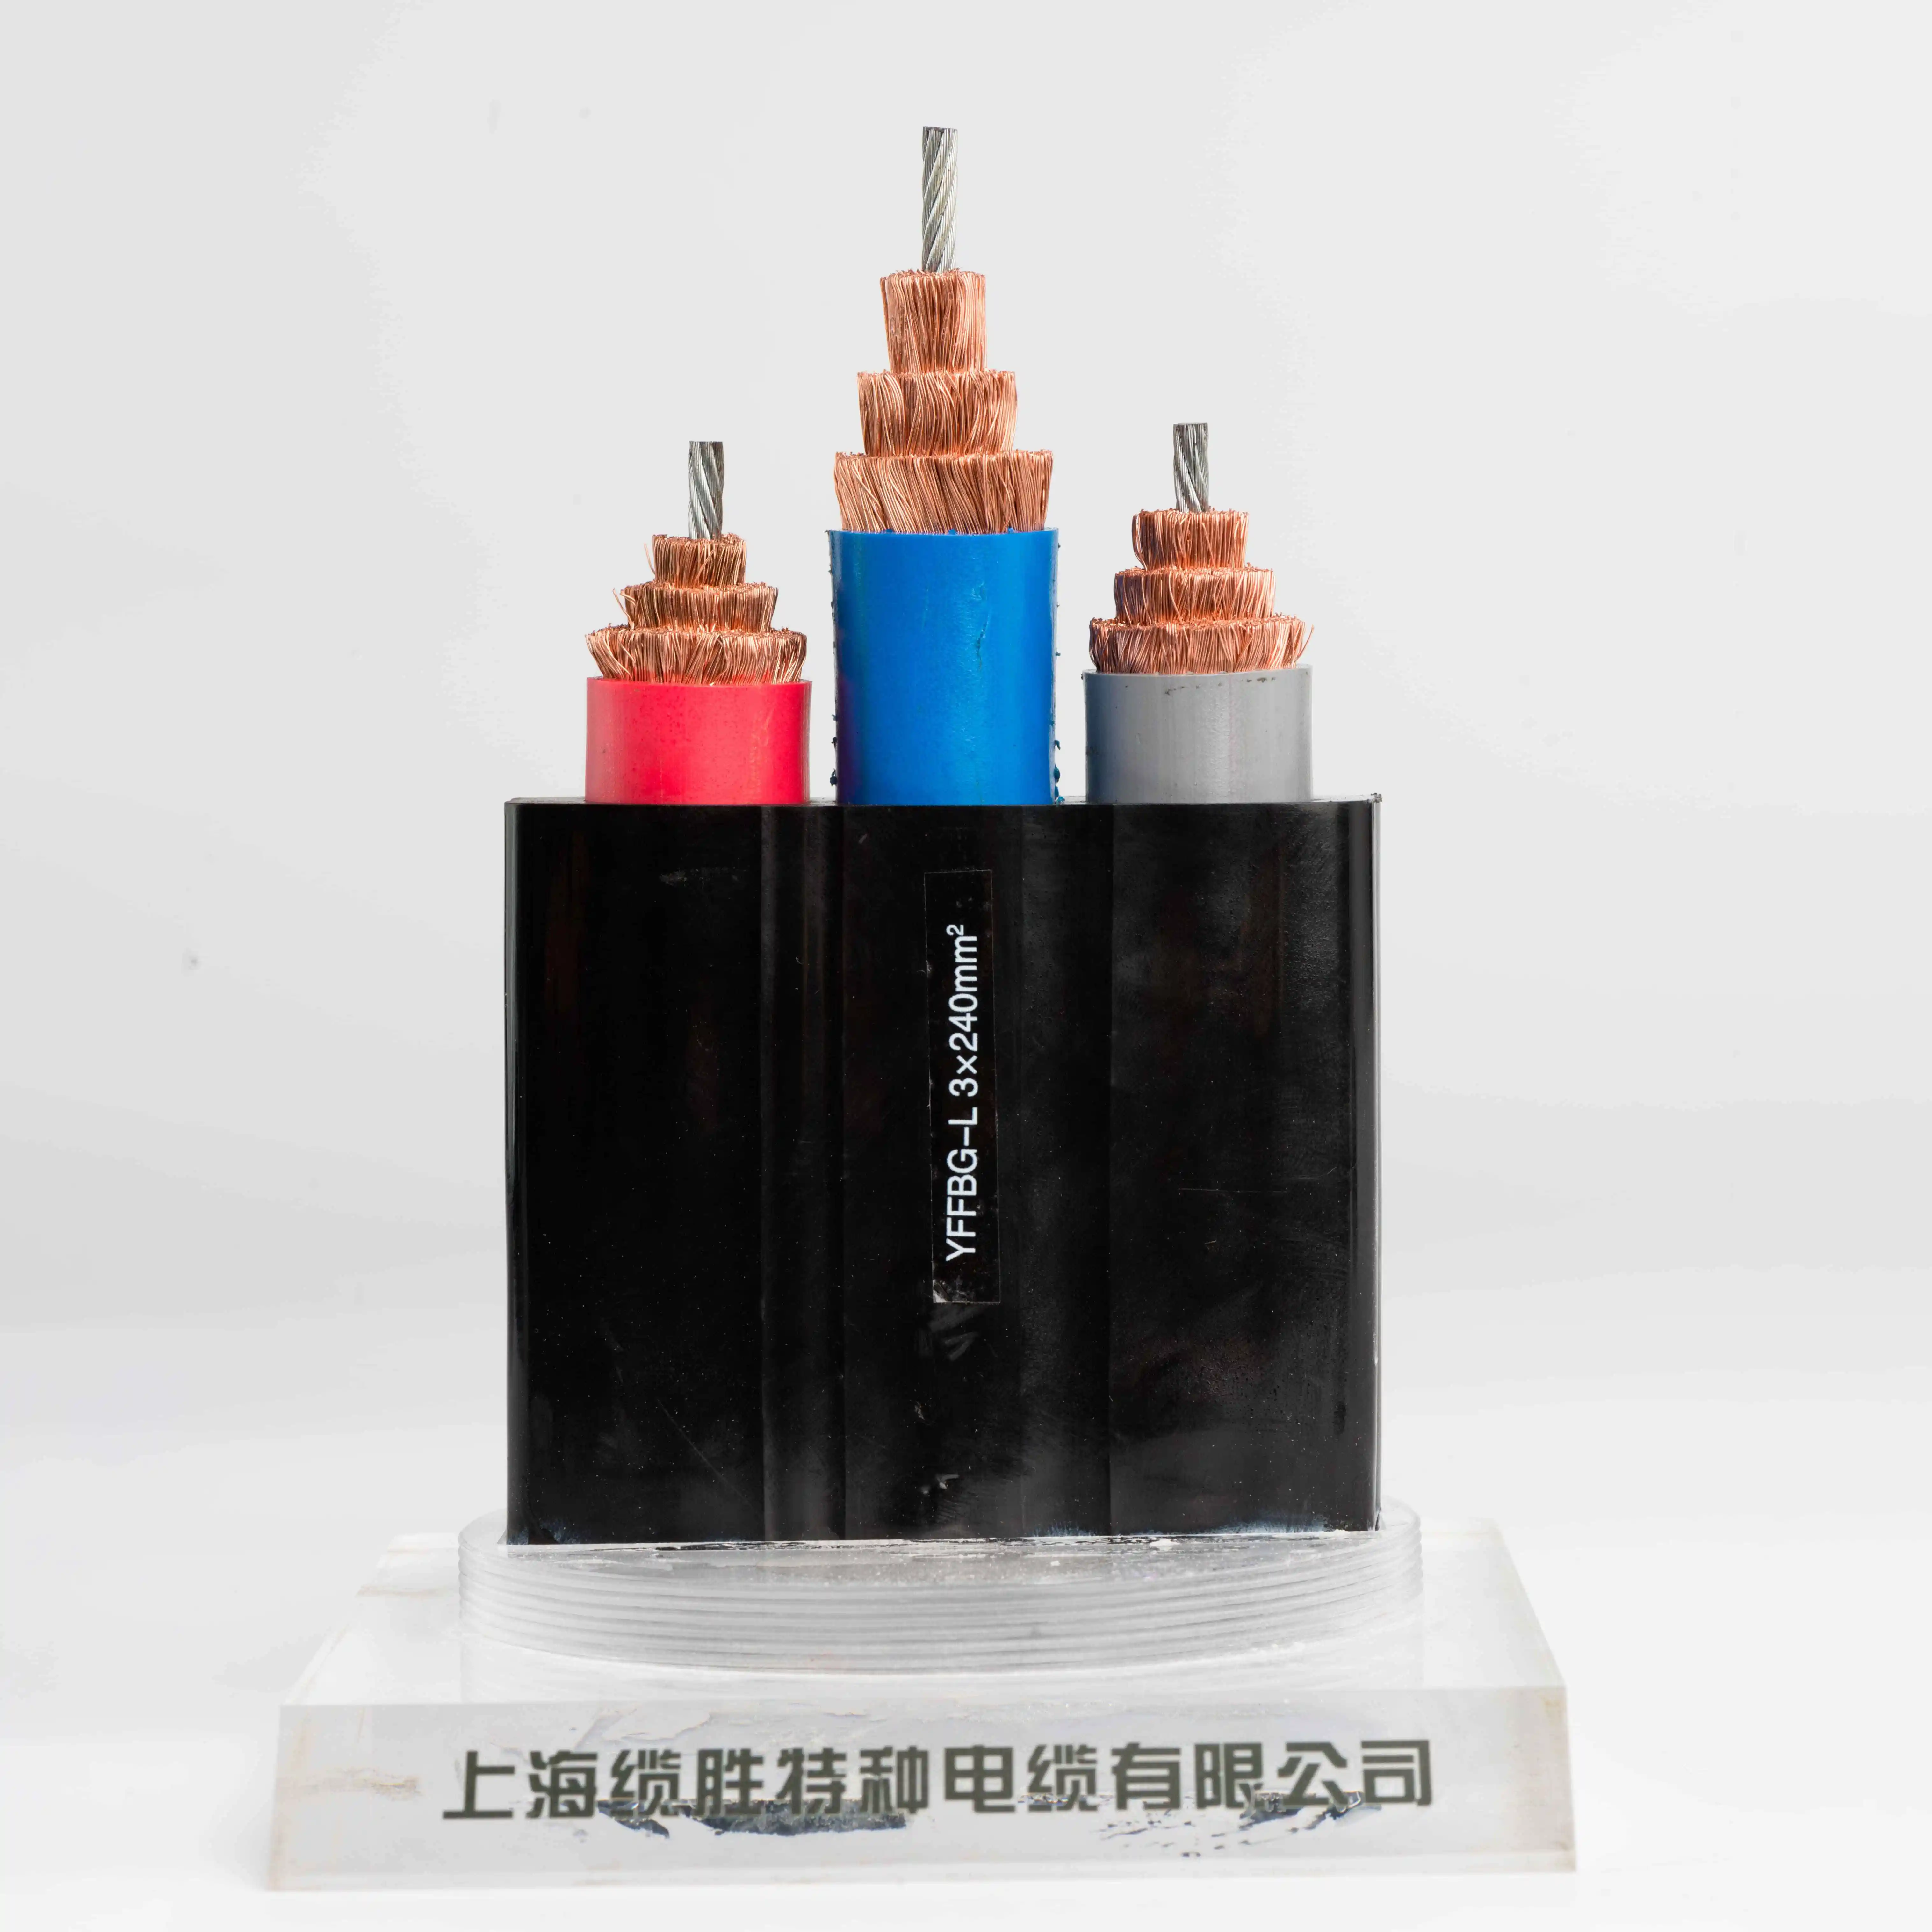 Lskabel kabel daya YFFB datar untuk peralatan seluler kabel Drum Reeling datar fleksibel untuk aplikasi bergerak sering